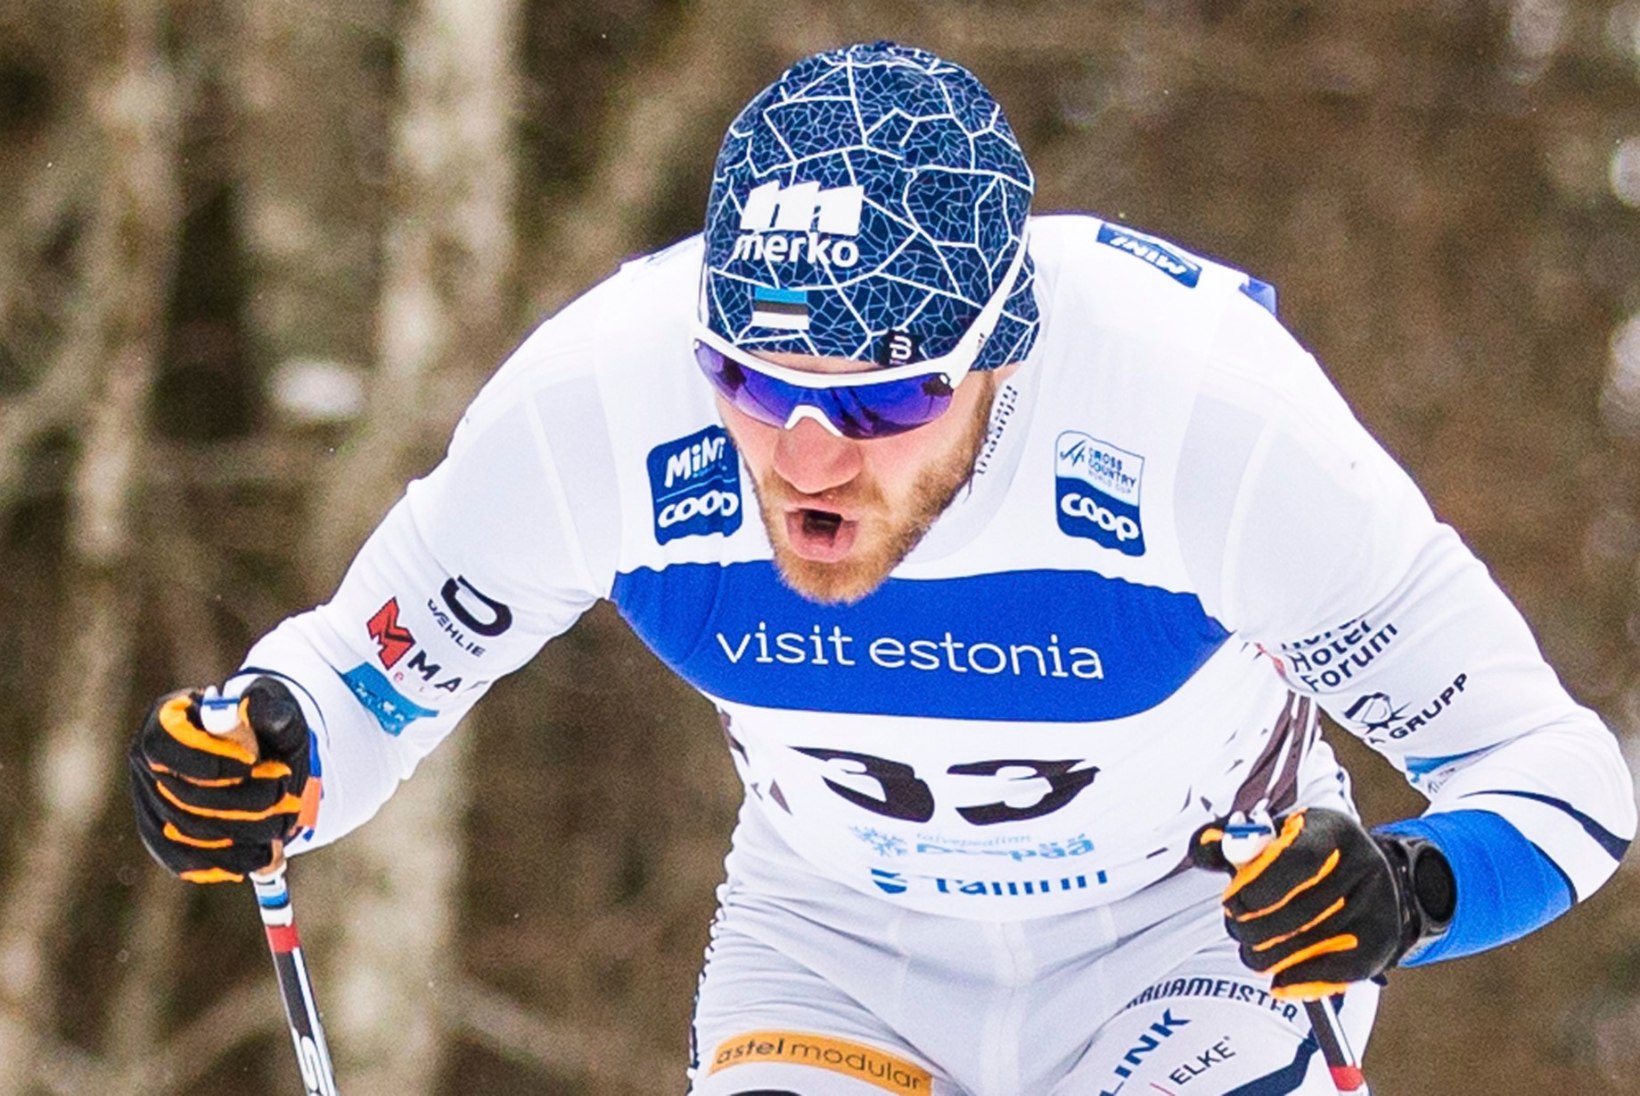 SEEFELDI MM | Teravalt alustanud Eesti sprinterid MMi finaali ei pääsenud. Treener: võib öelda, et tegin vale valiku